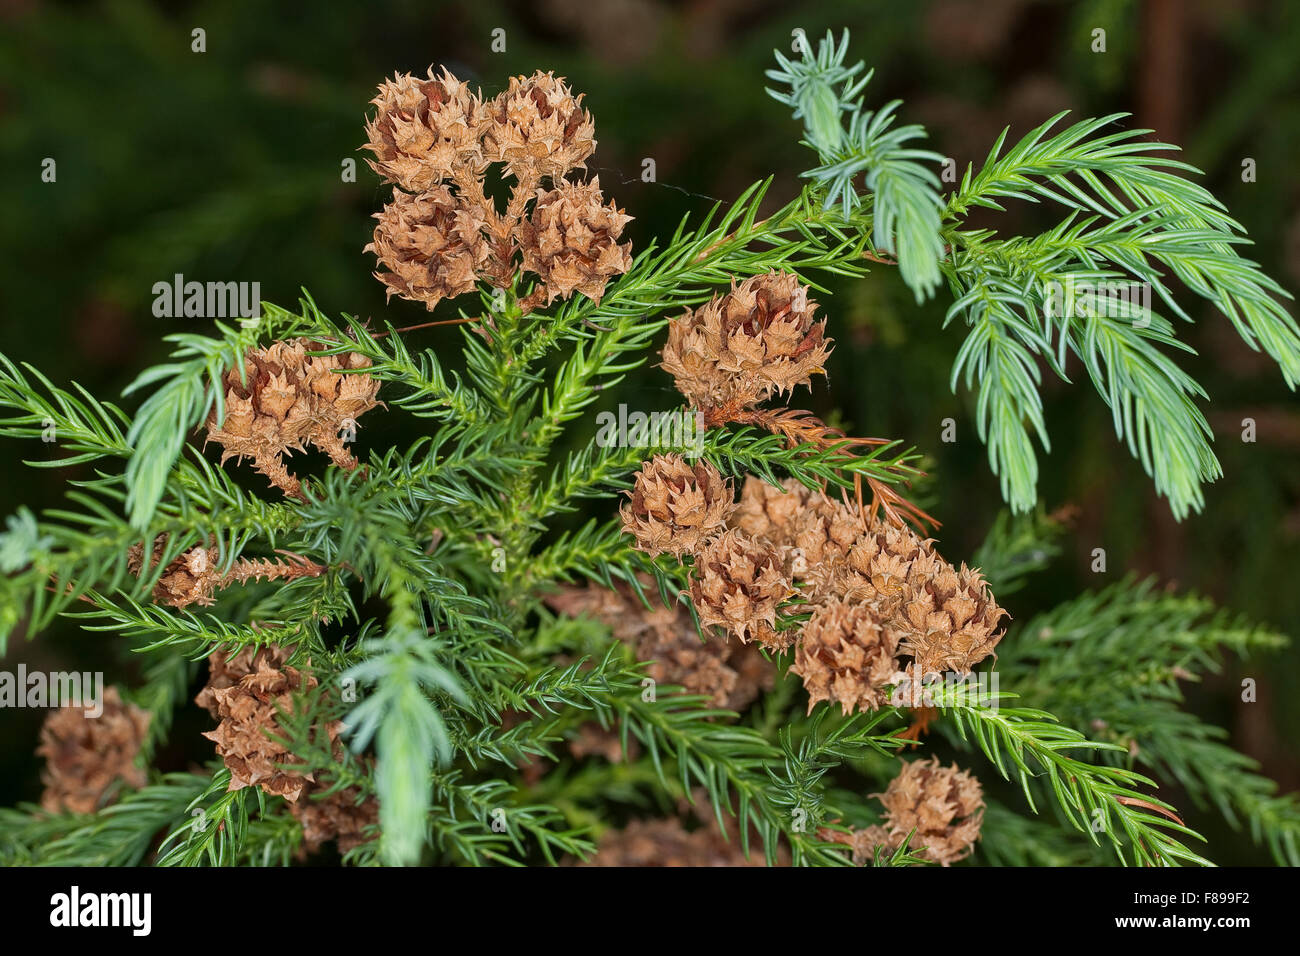 Japanese Cedar, Japanische Sicheltanne, Sichel-Tanne, Japanische Zeder, Sugi, Cryptomeria japonica, Cupressus japonica Stock Photo